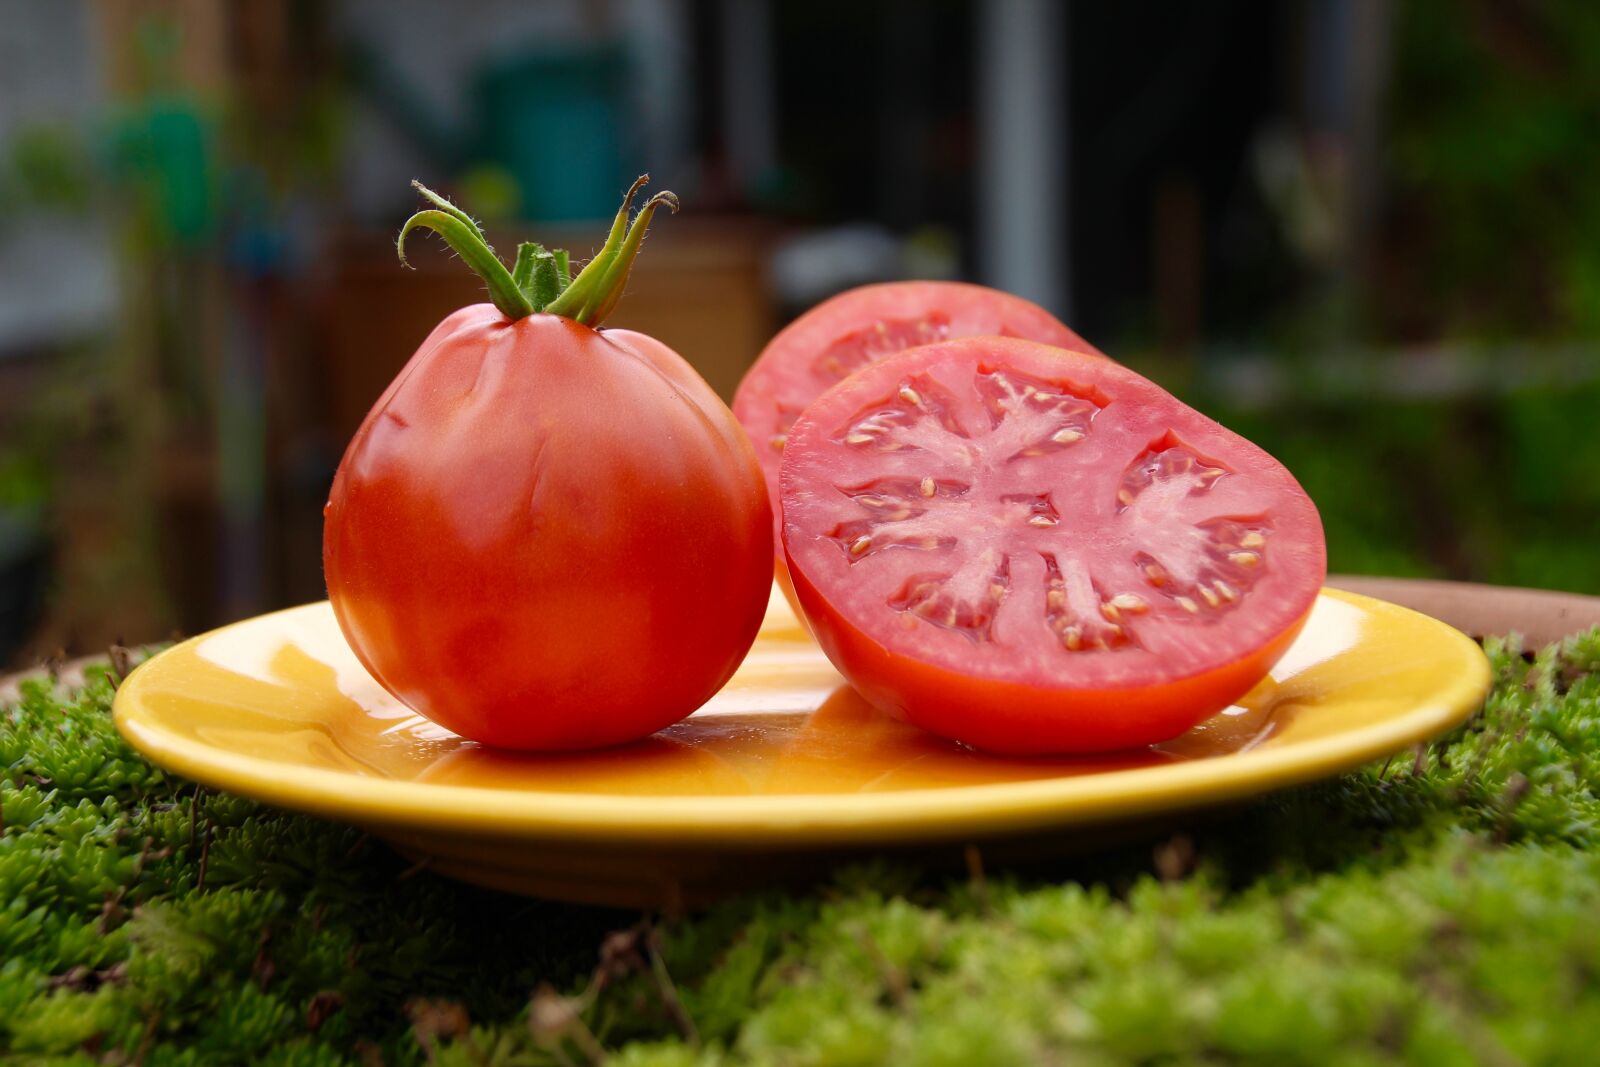 Canon EOS 600D (Rebel EOS T3i / EOS Kiss X5) sample photo. Tomato, garden, vegetables photography